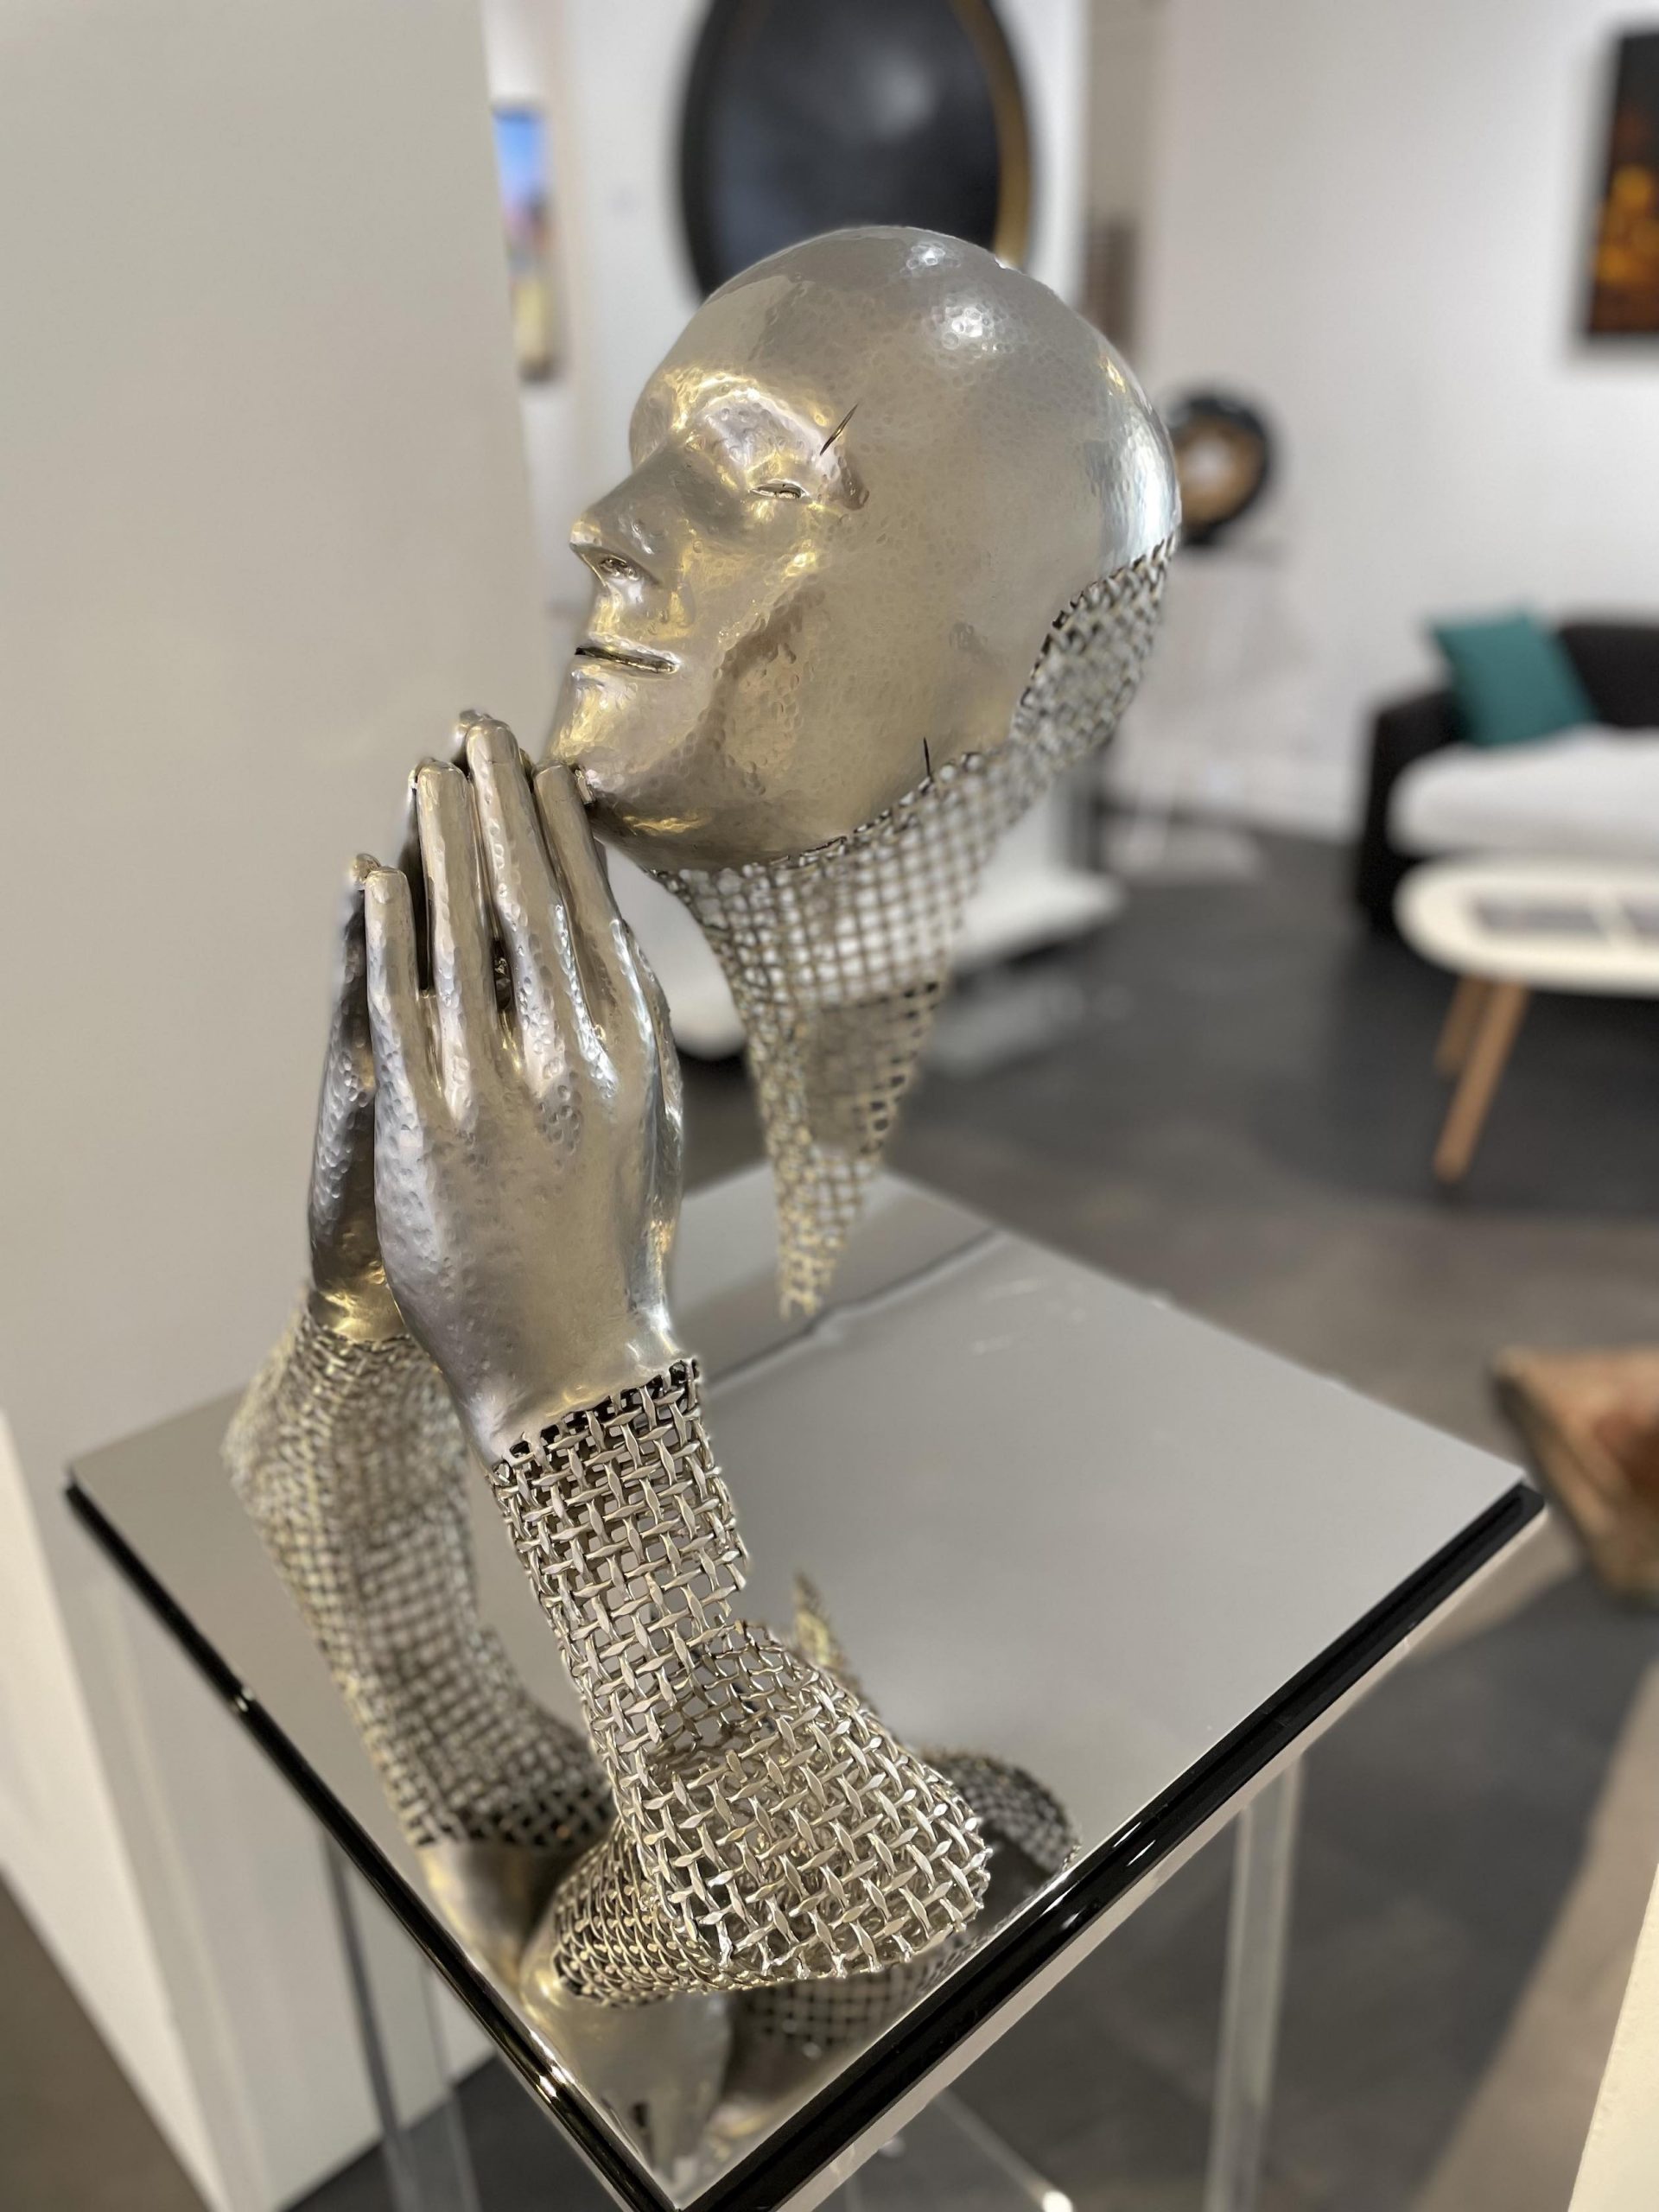 Découvrez la nouvelle collection des sculptures de l'Artiste Franck Kuman visible à la Galerie Maner. Une sélection de photos des oeuvres d'art contemporaines mettant en avant le talent de cet Artiste.